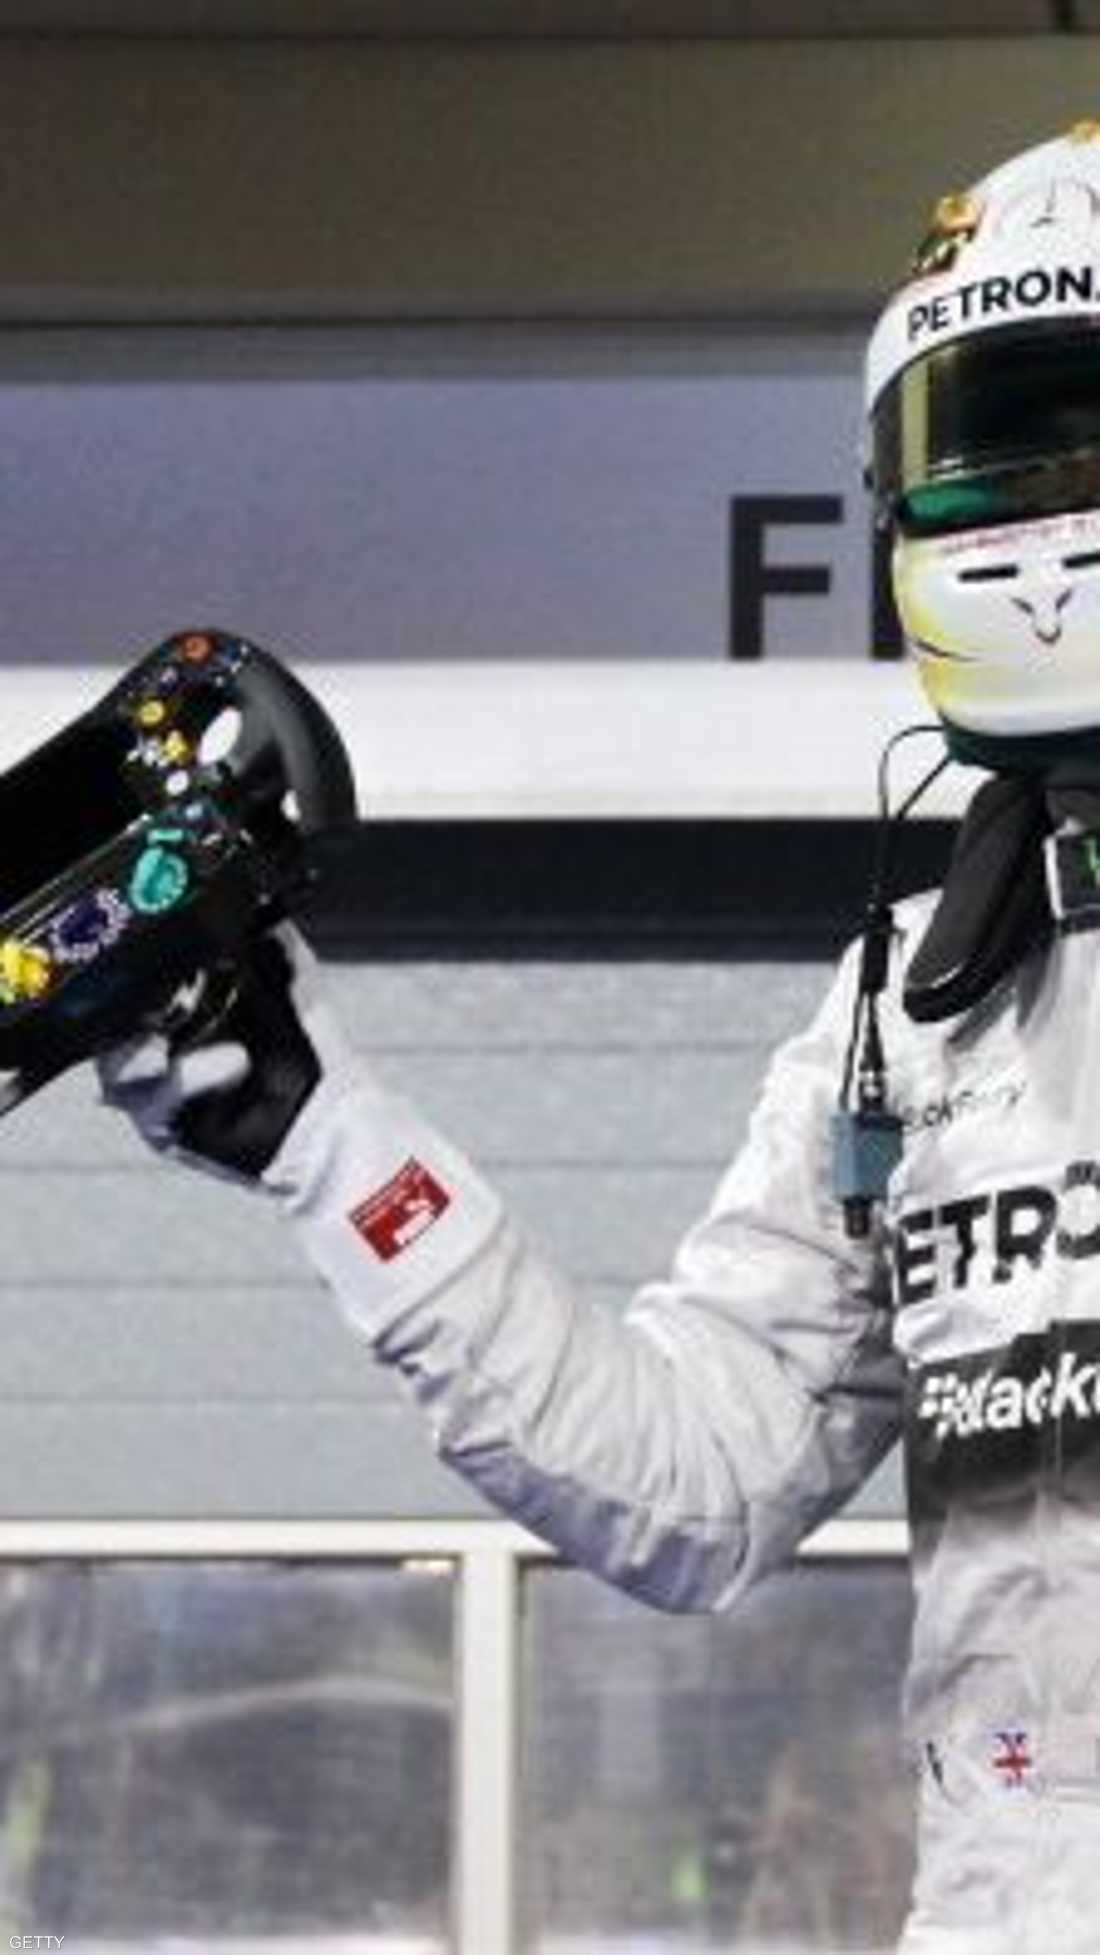 البريطاني لويس هاملتون يحتفل بفوزه بالمركز الأول في سباق جائزة البحرين الكبرى 